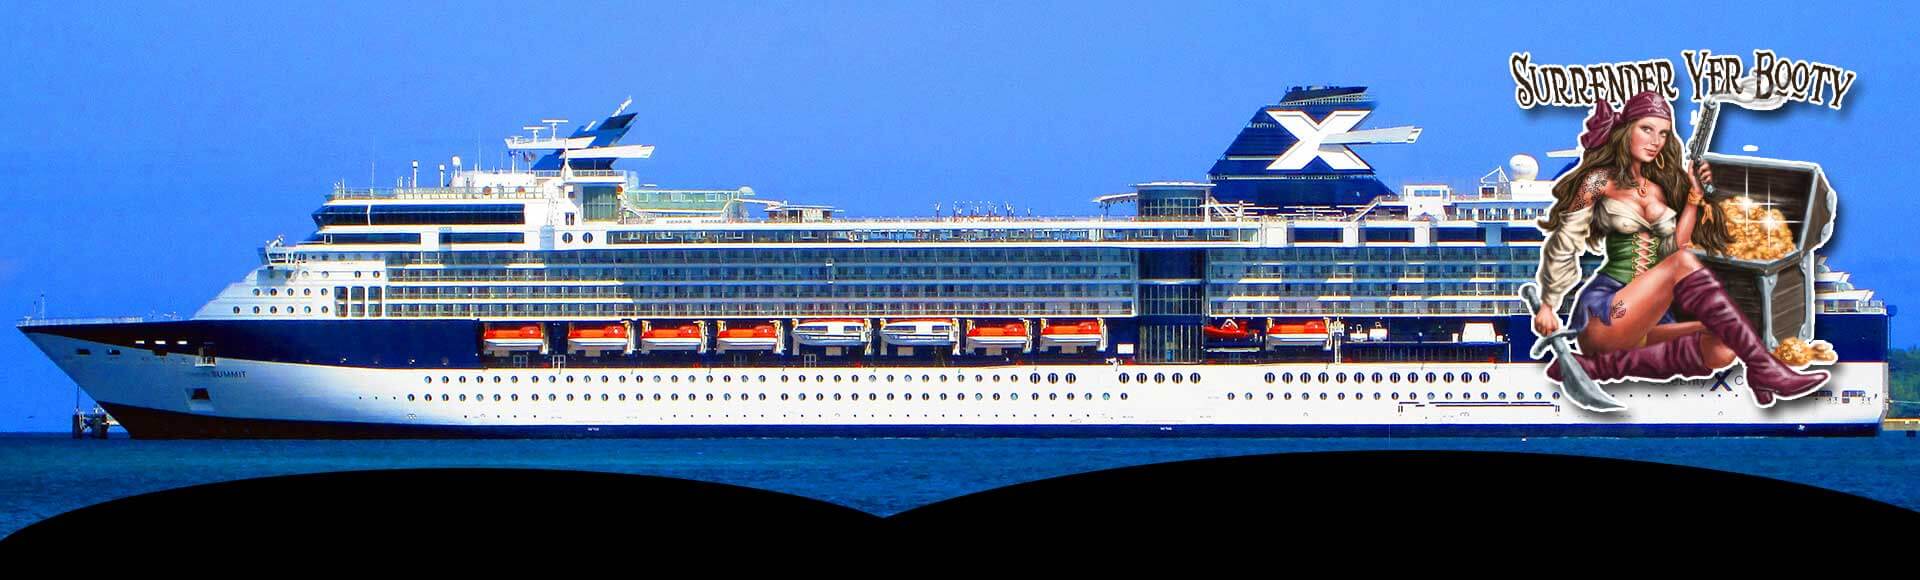 Celebrity Summit Cruise Ship